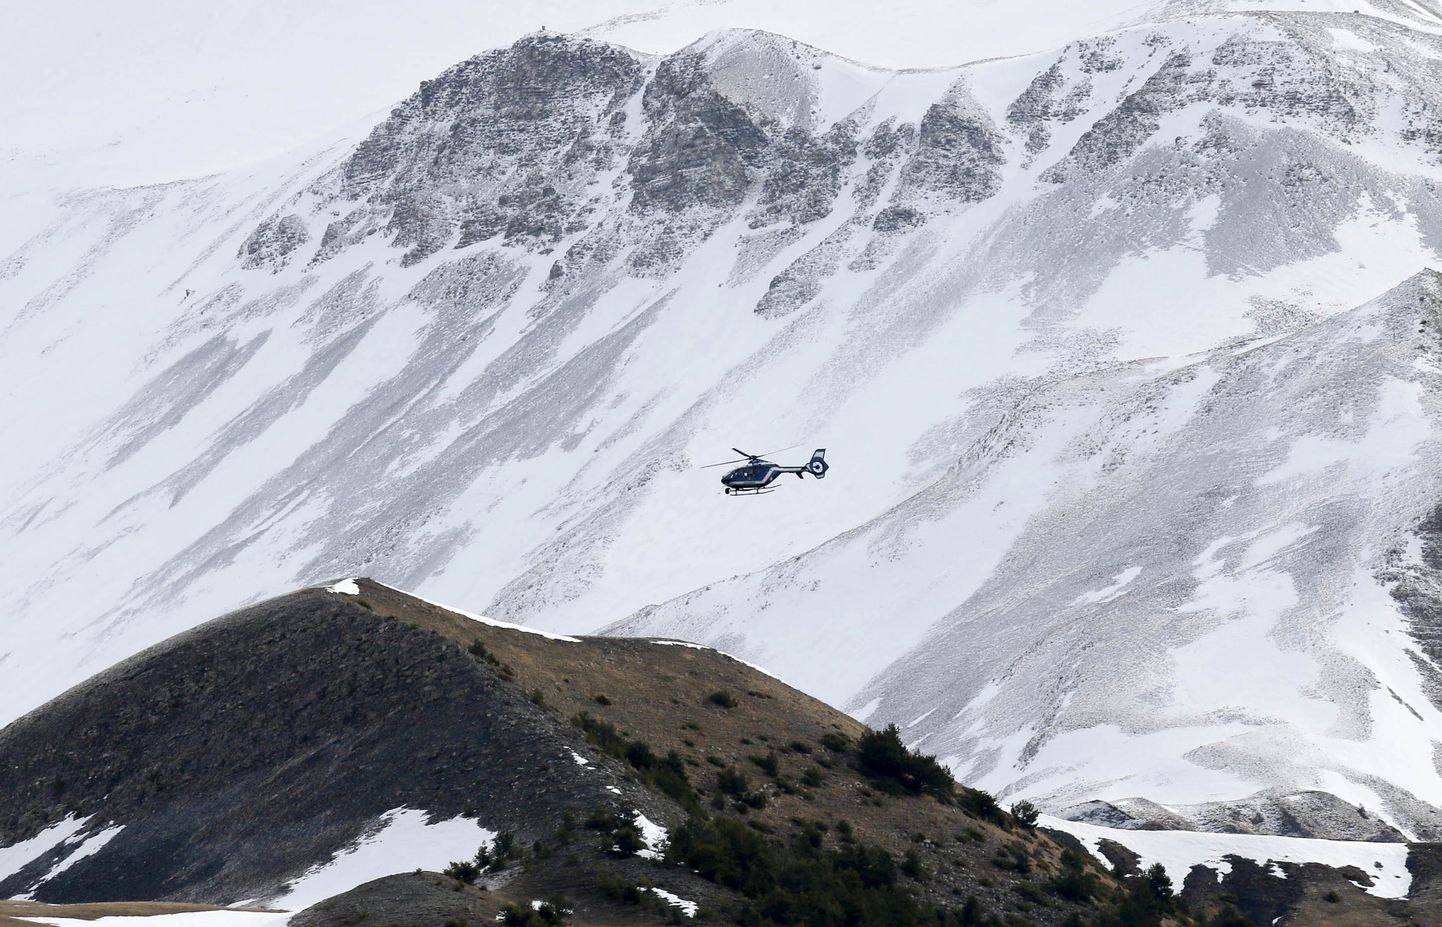 Prantsuse sandarmeeria kopter osaleb lennukatastroofi ohvrite otsingutel Alpides.